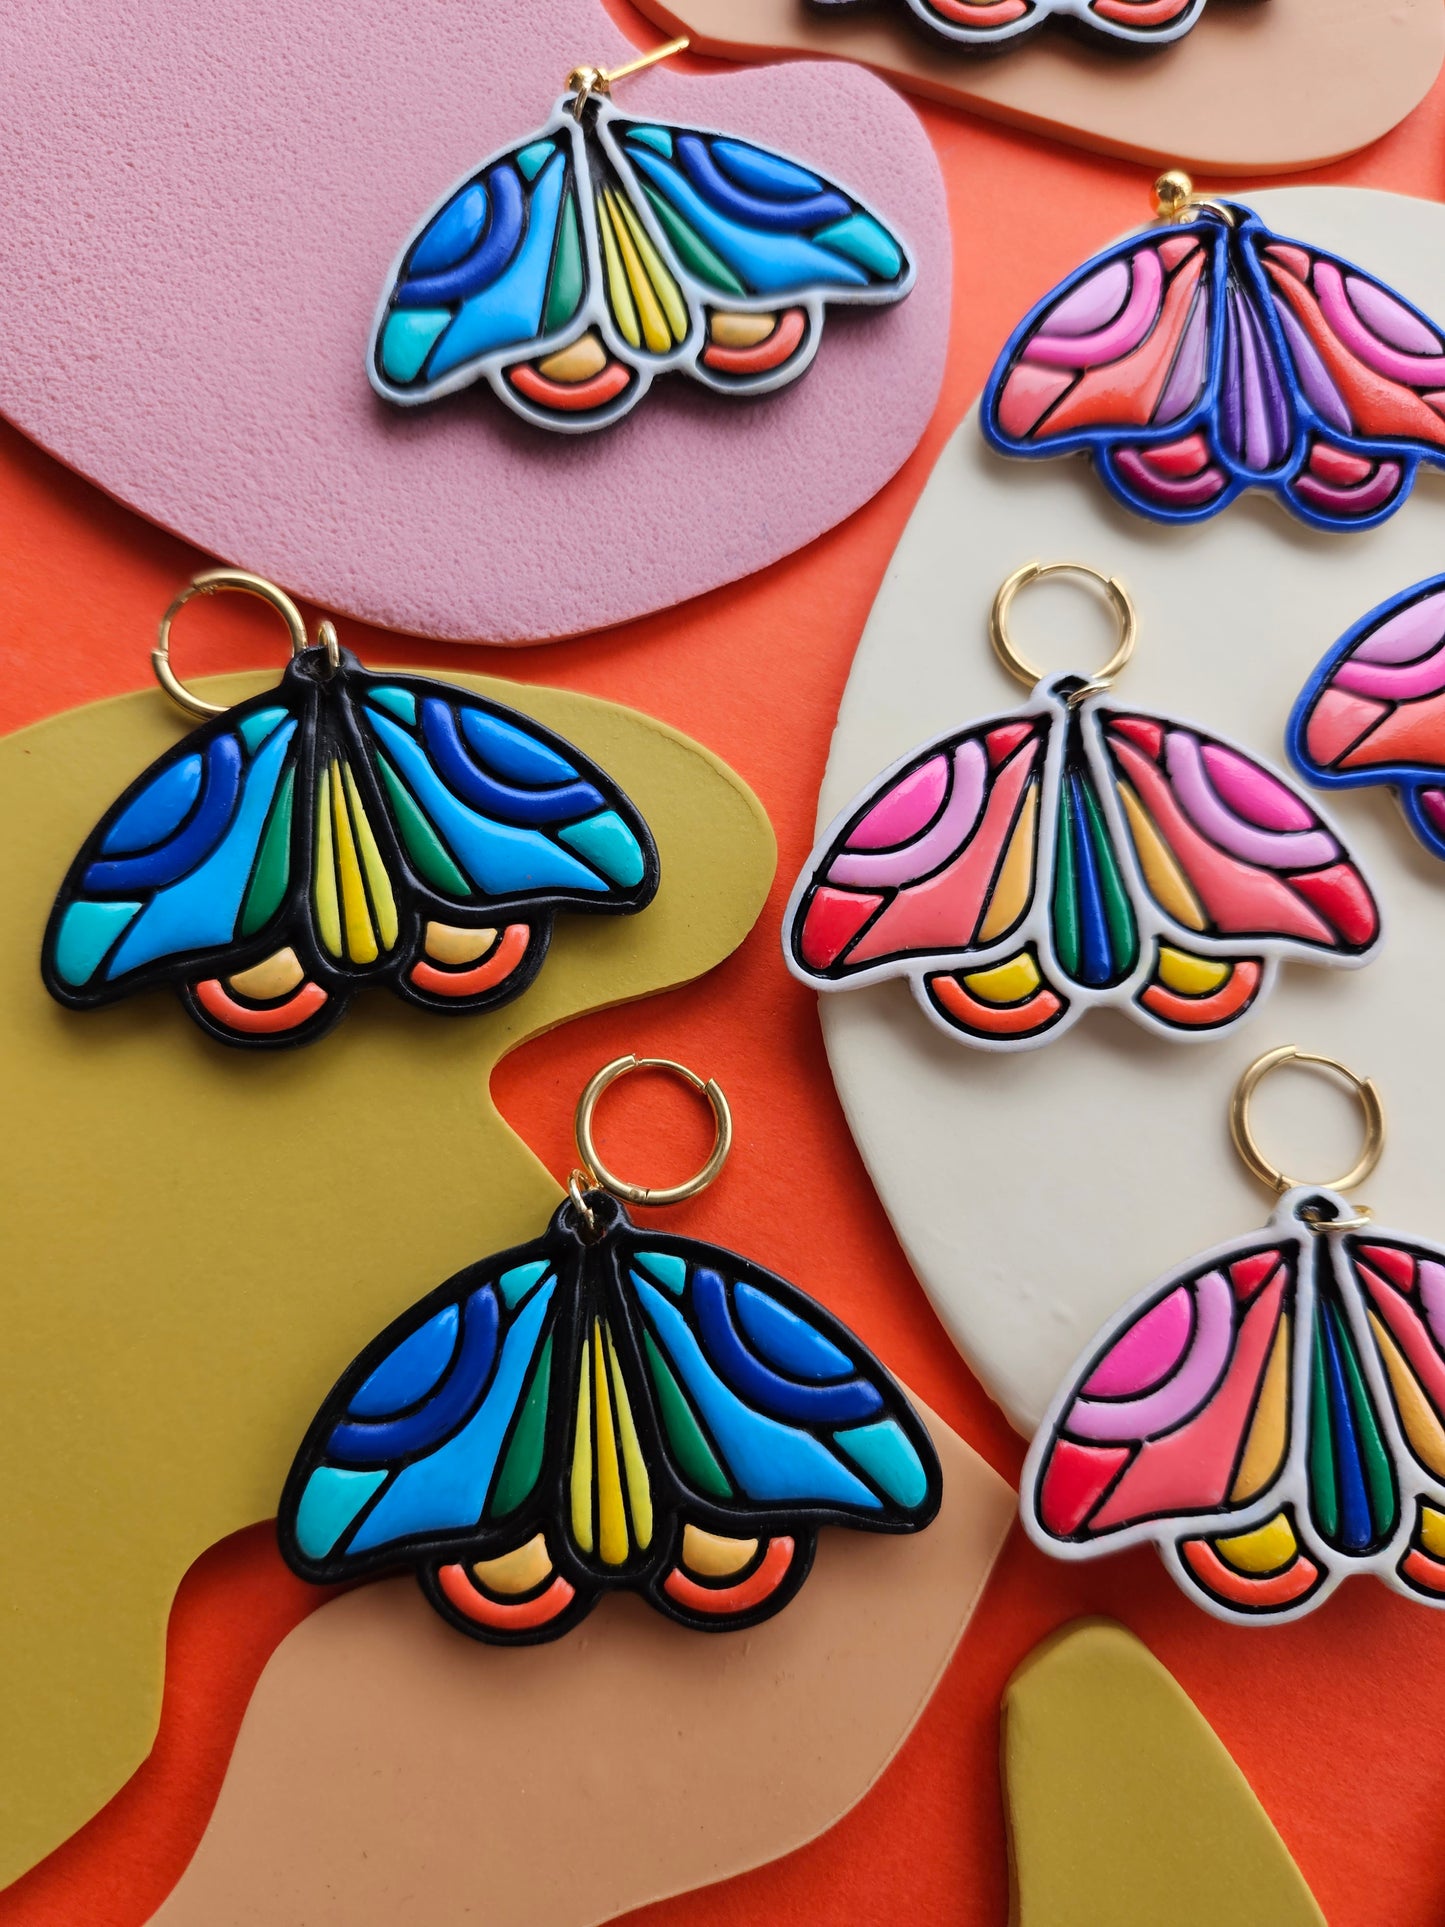 PRE ORDER "The Joyce" Emily Van Hoff Hand-Painted Rainbow Moth Collab Earrings